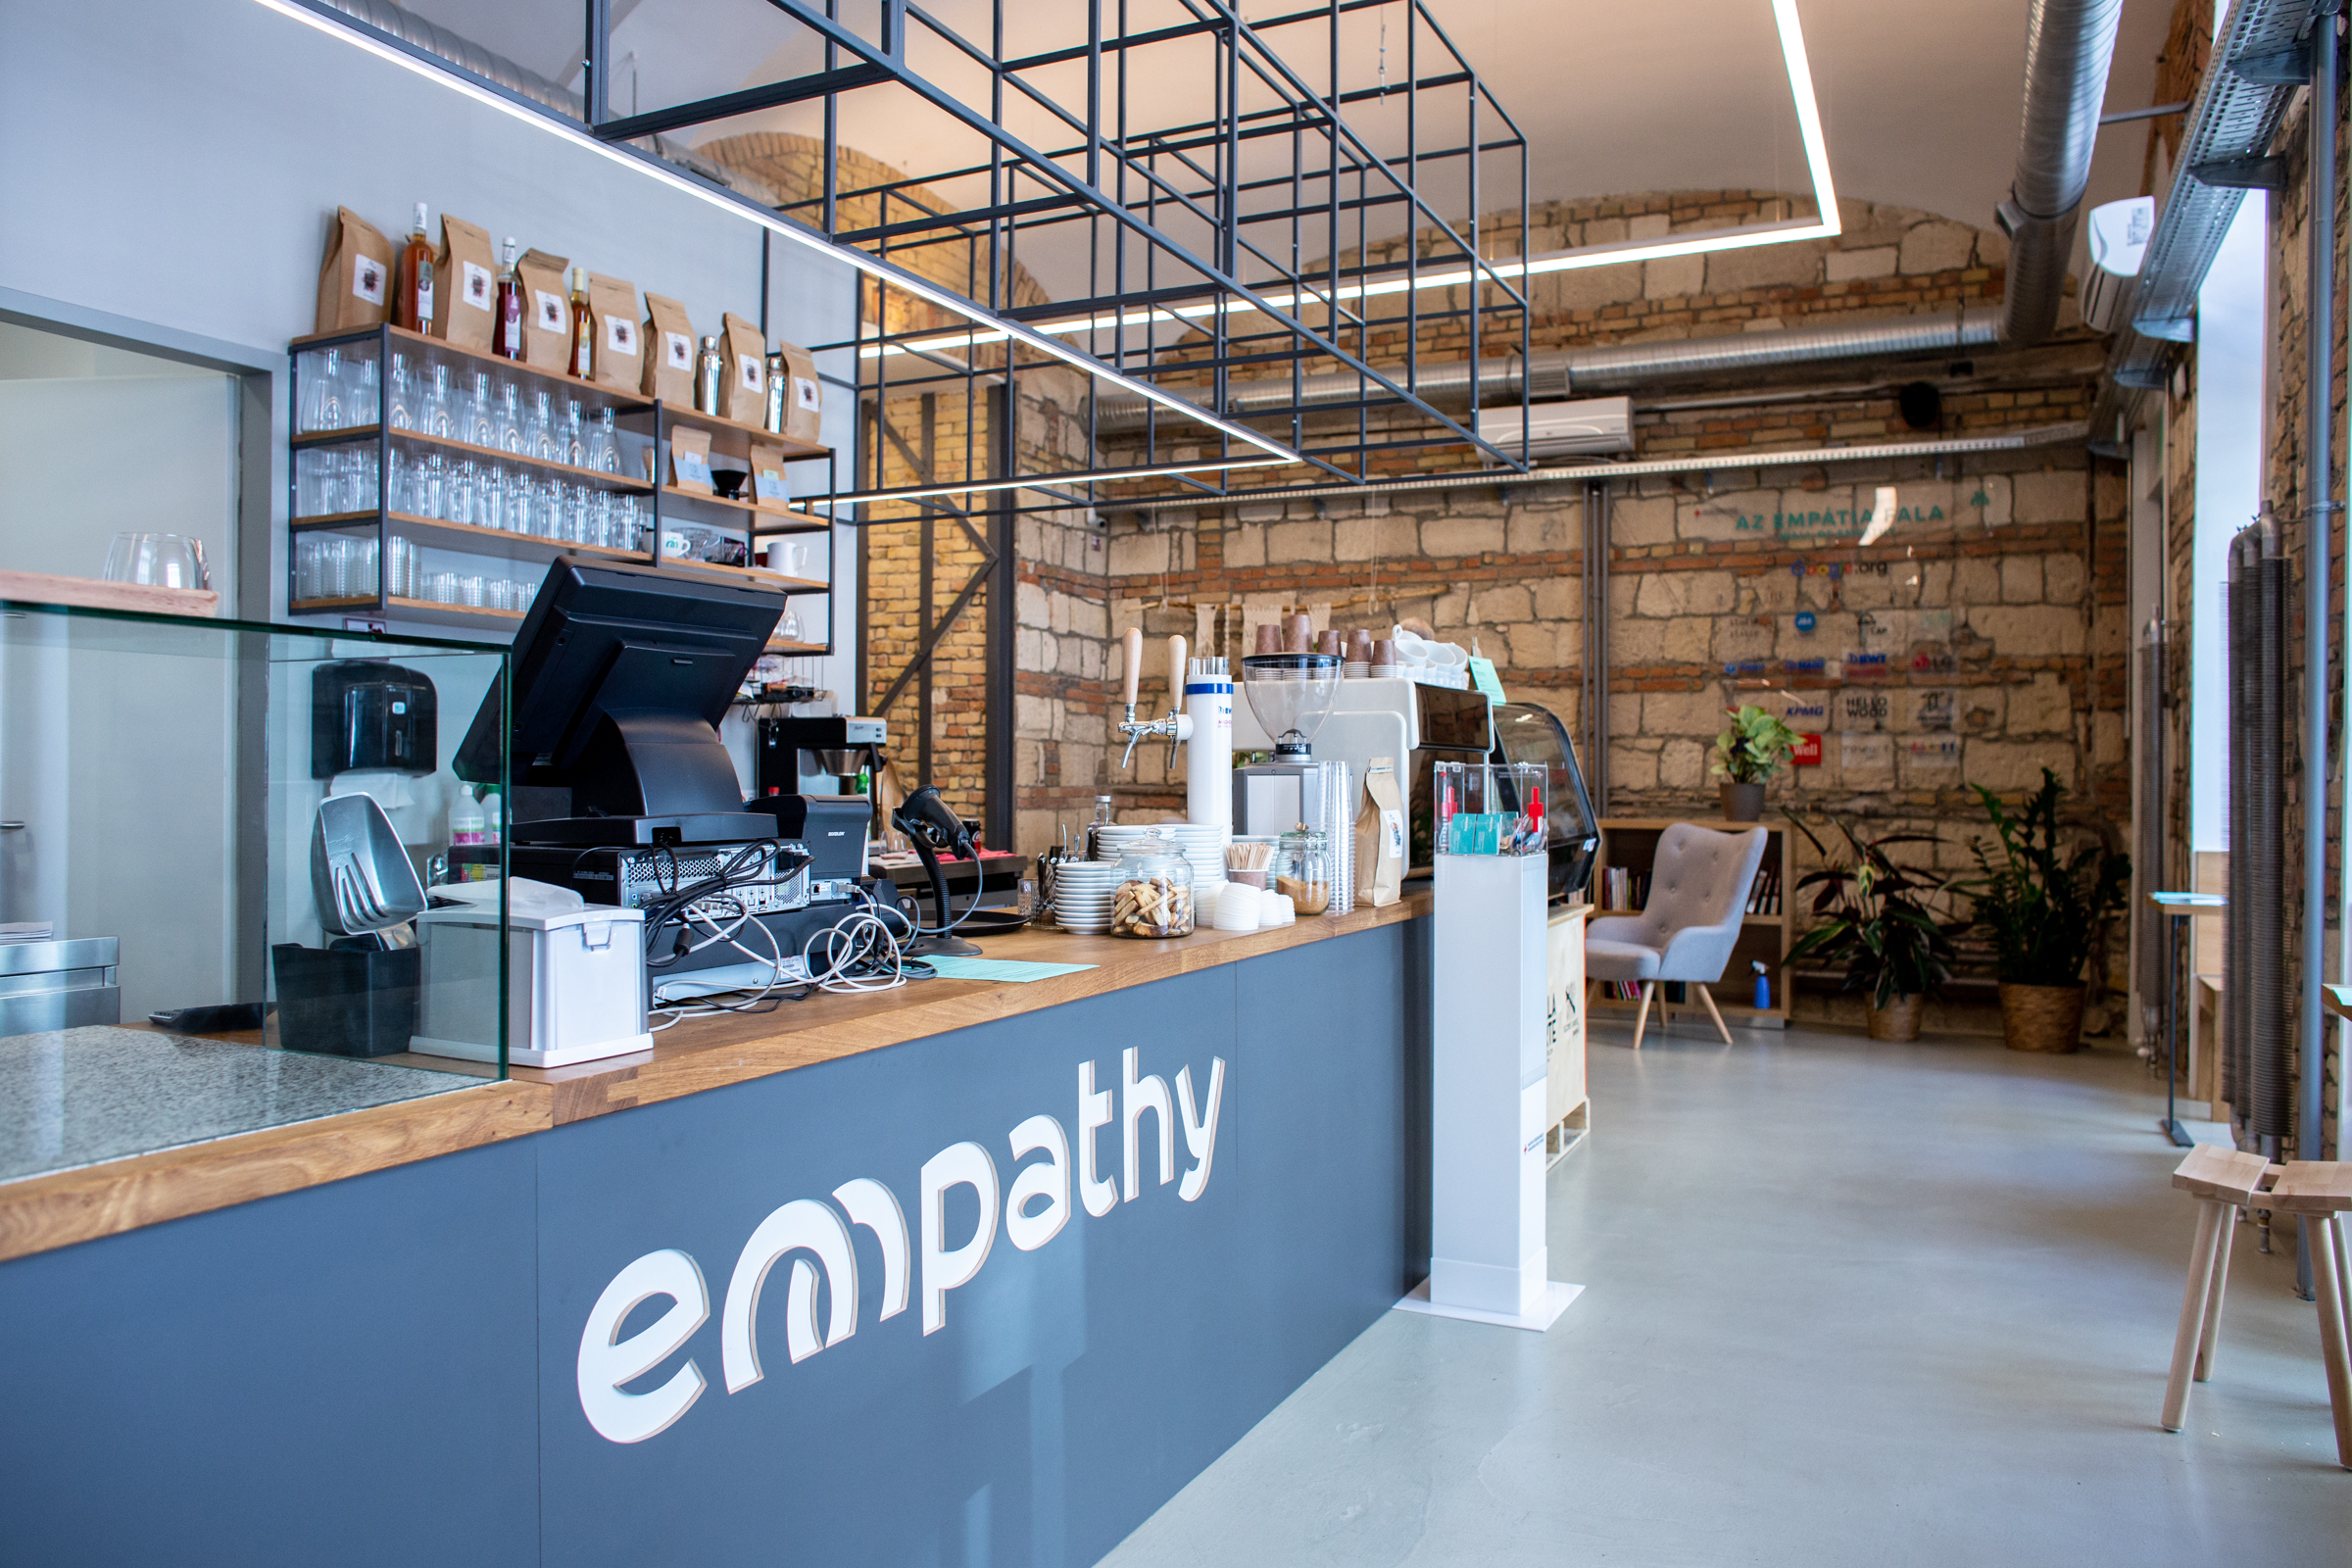 Óriási összefogással jött létre a Magyar Vöröskereszt charity-kávézója, az Empathy Café